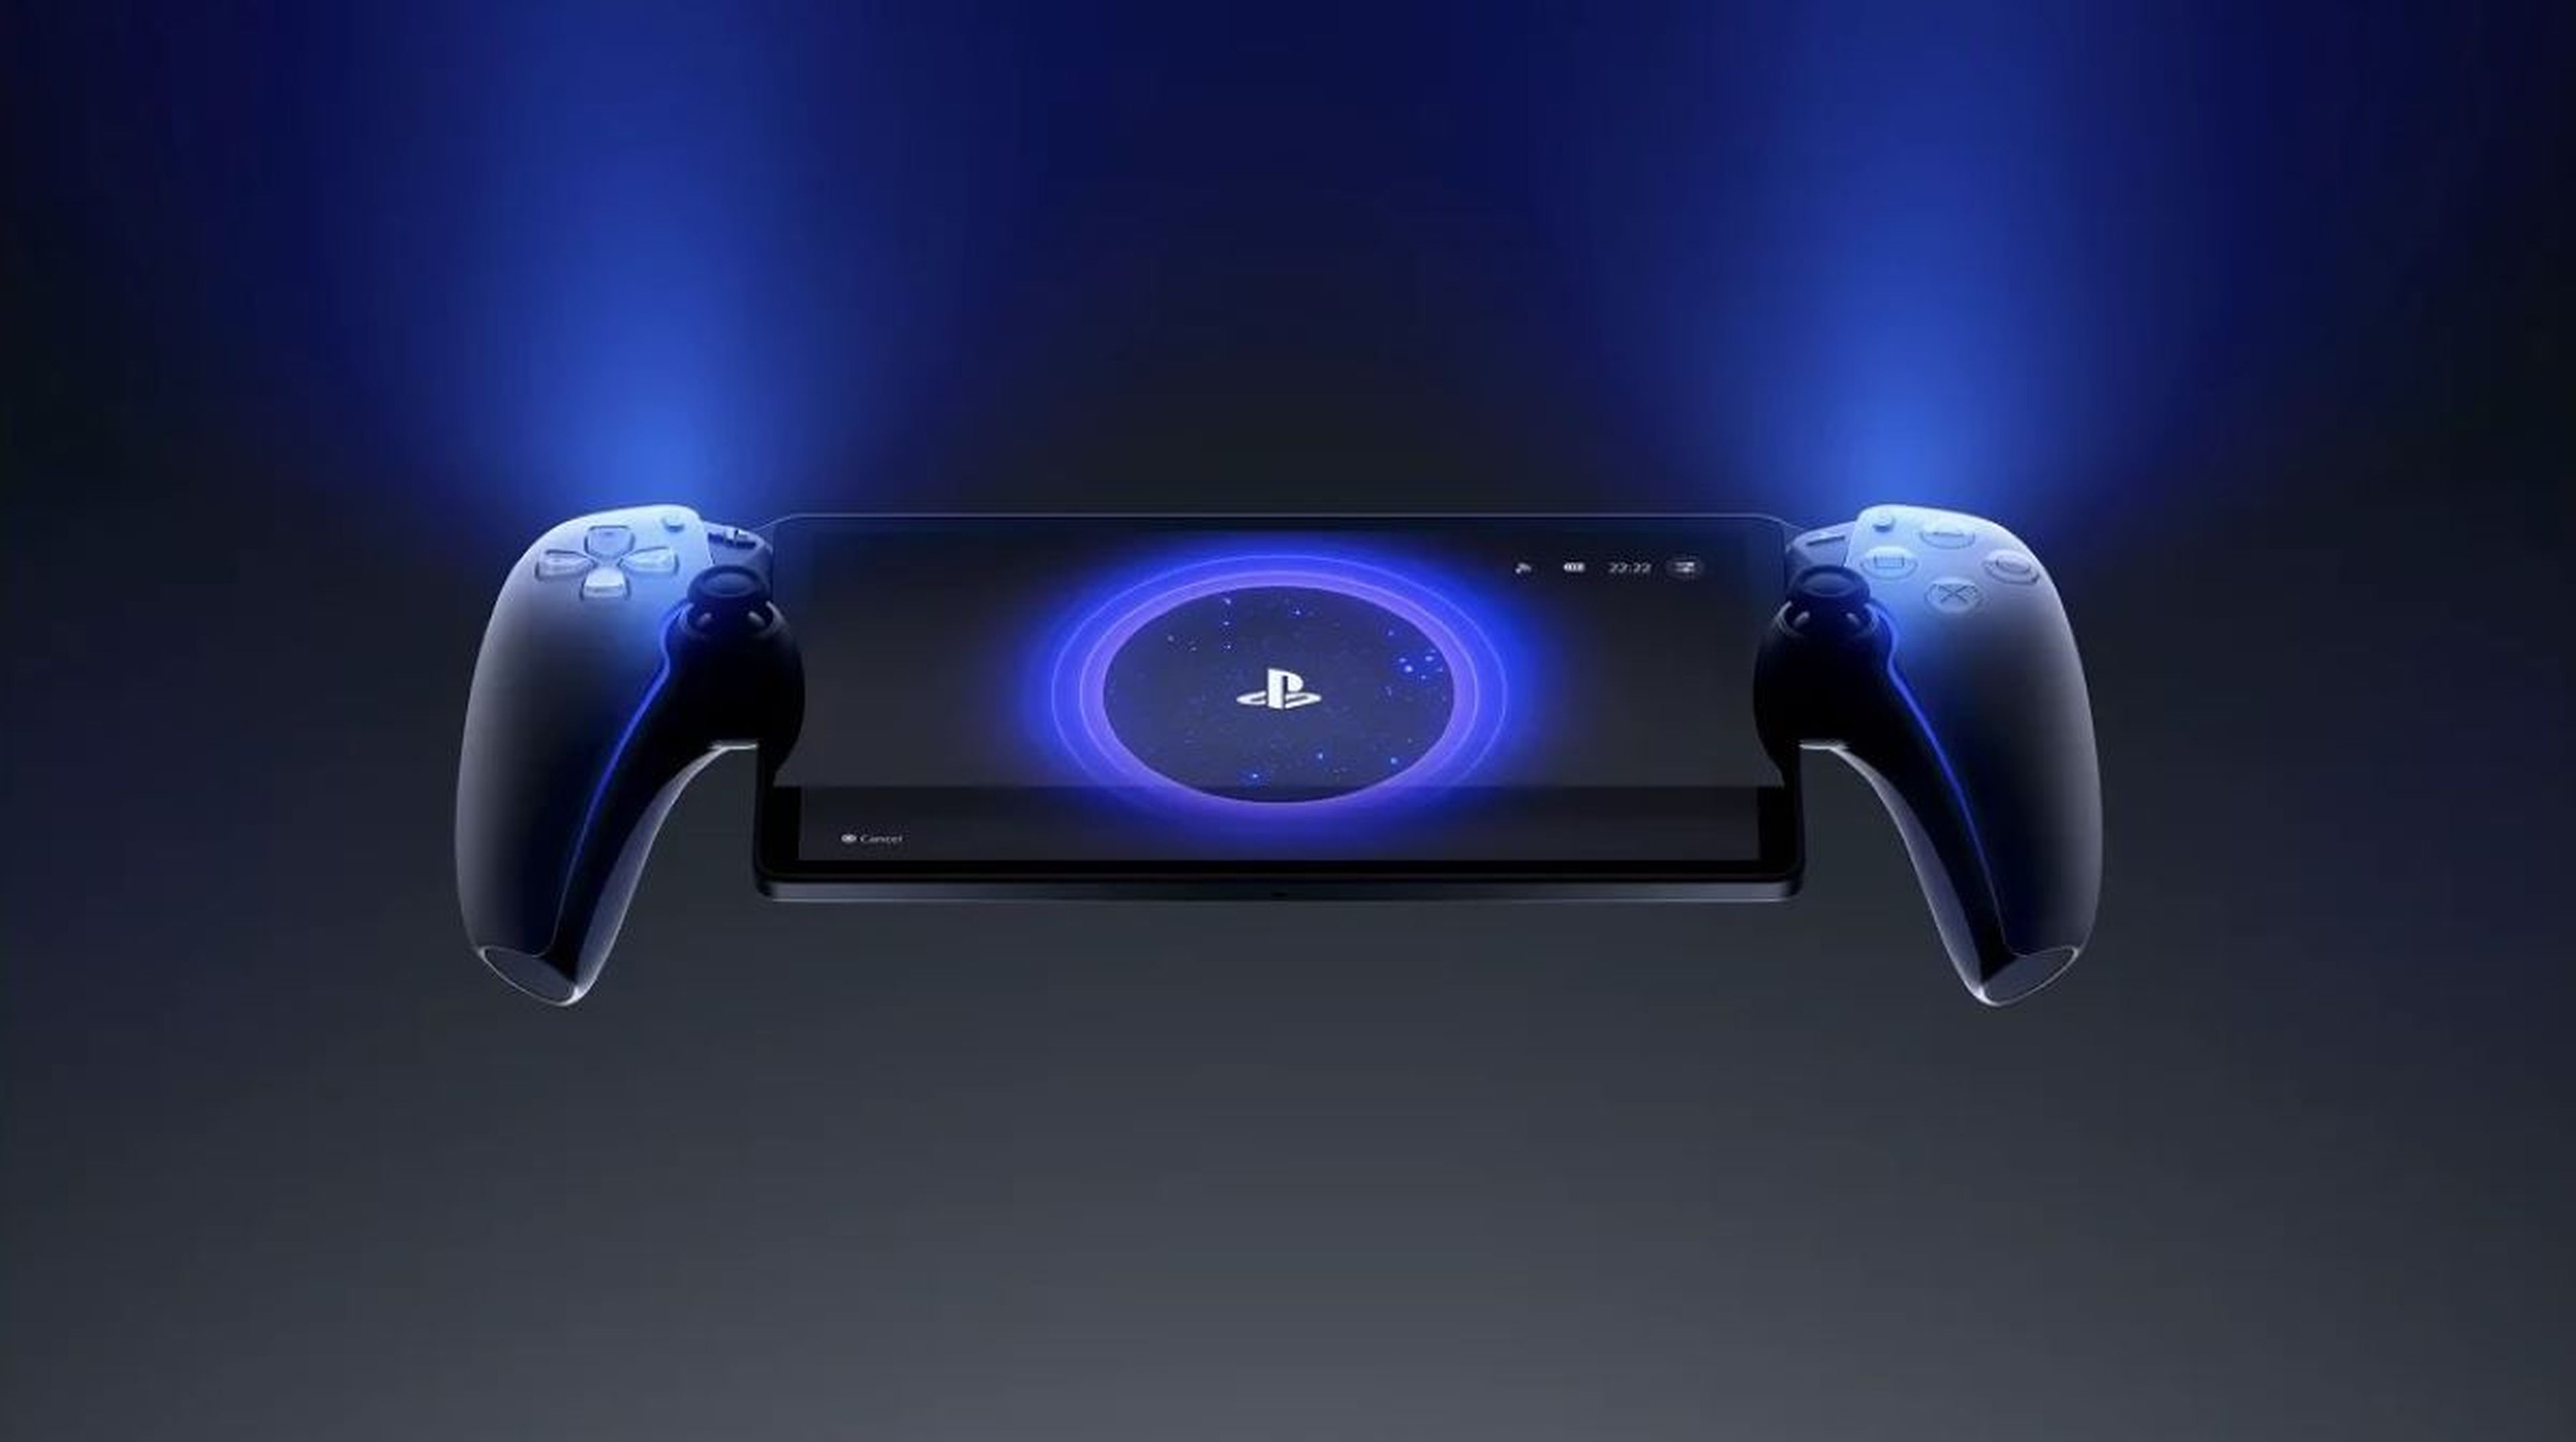 Nueva consola portátil Sony diseñada para juego remoto de PS5